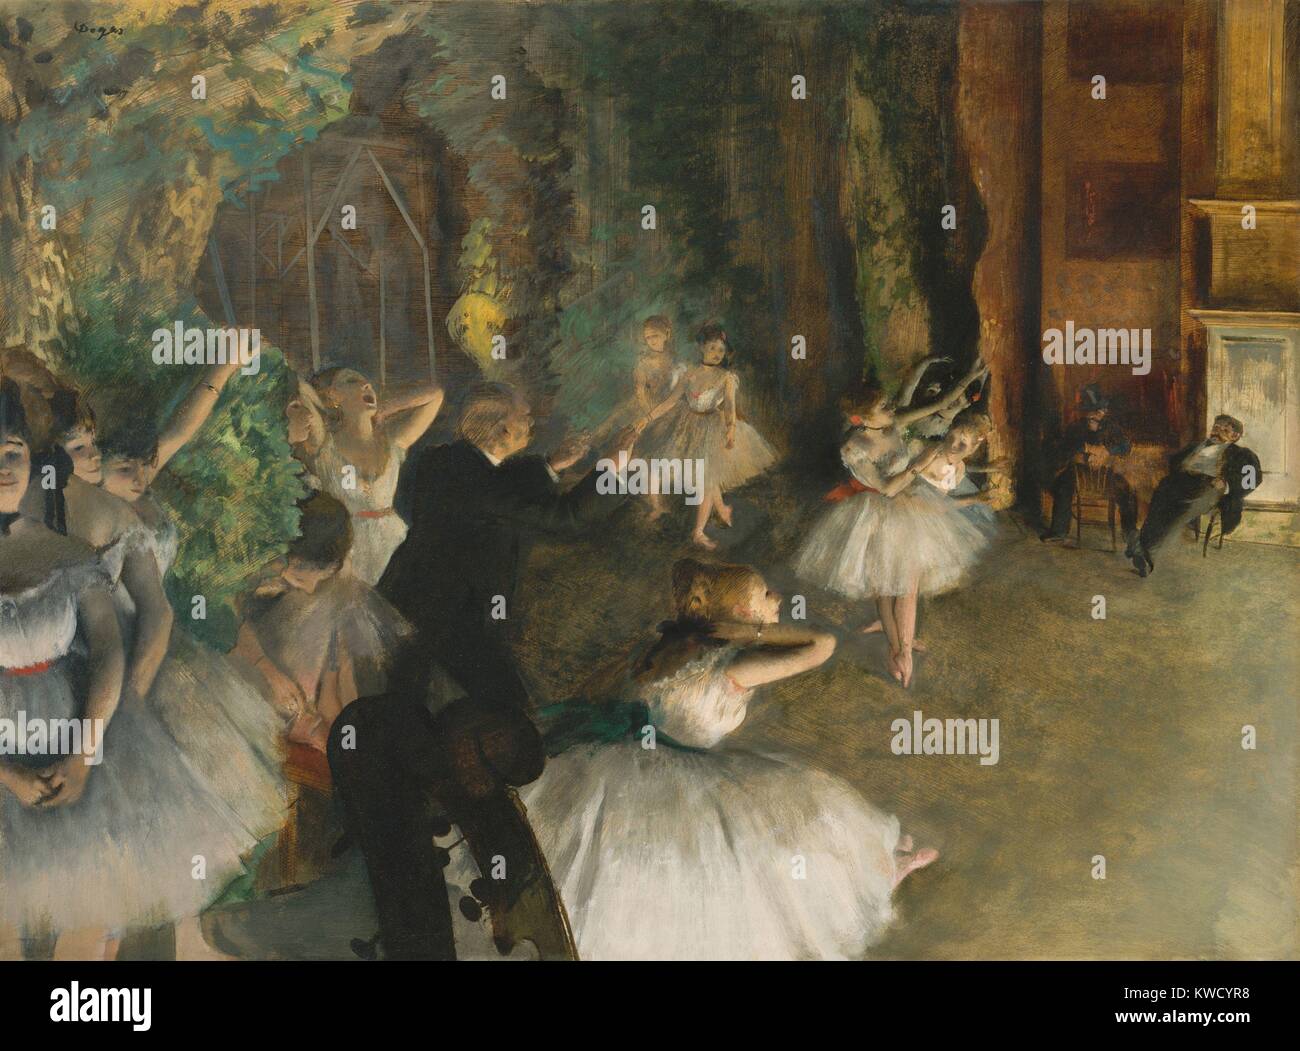 Le prove del balletto sul palco, di Edgar Degas, 1874, impressionista francese mixed media disegno. Ballerine stand in posture naturali, fuori campo mentre gli uomini osservare i ballerini sul palco. Ci sono divertenti ritagliato violino scorre in basso a sinistra (BSLOC 2017 3 103) Foto Stock